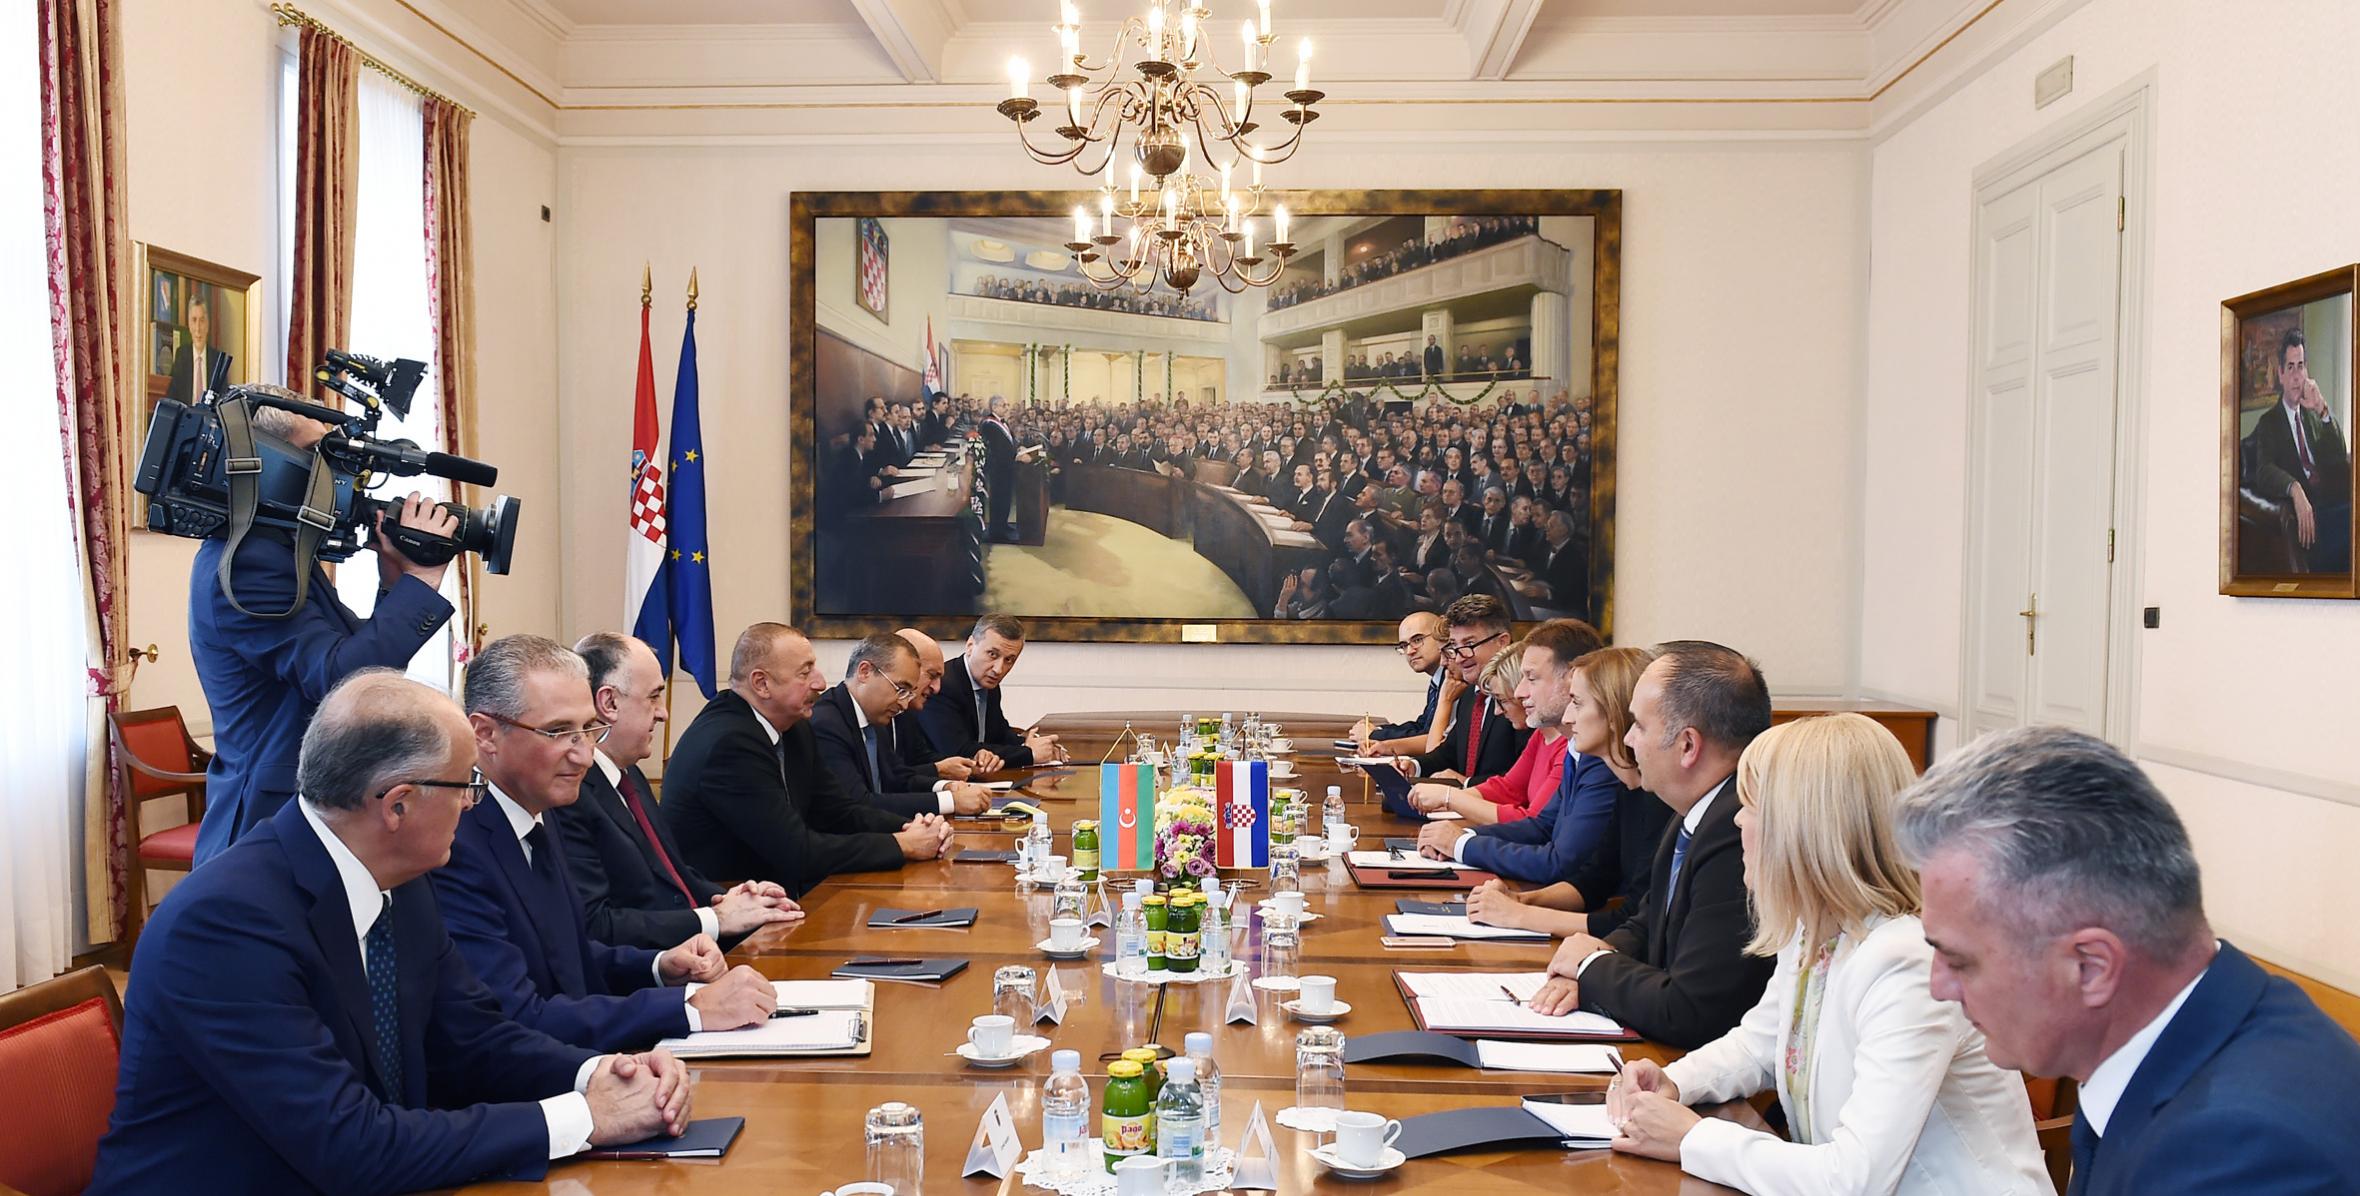 Ильхам Алиев встретился с председателем парламента Хорватии Горданом Яндроковичем